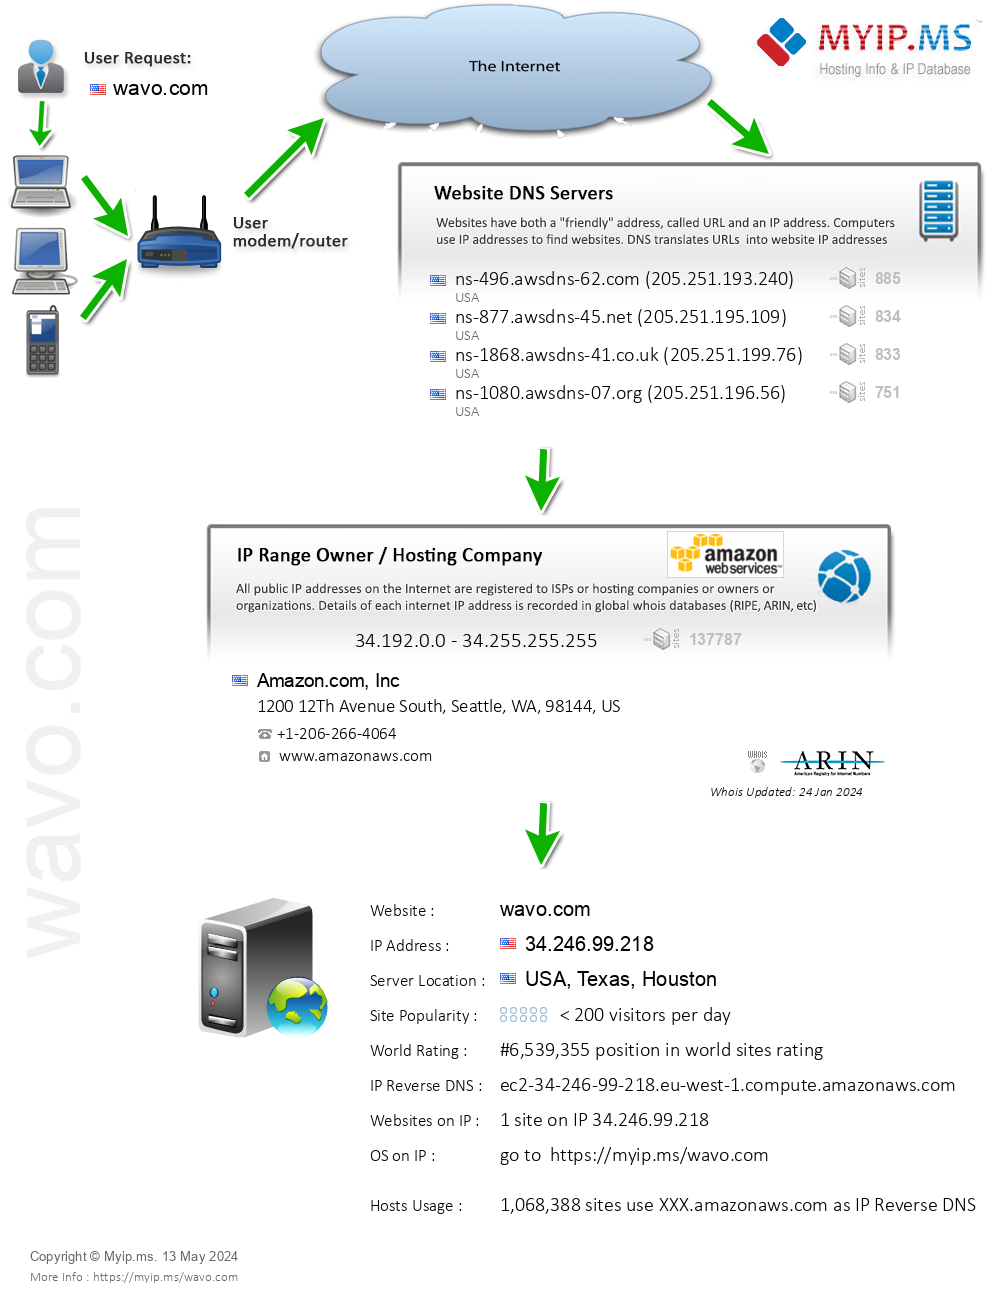 Wavo.com - Website Hosting Visual IP Diagram